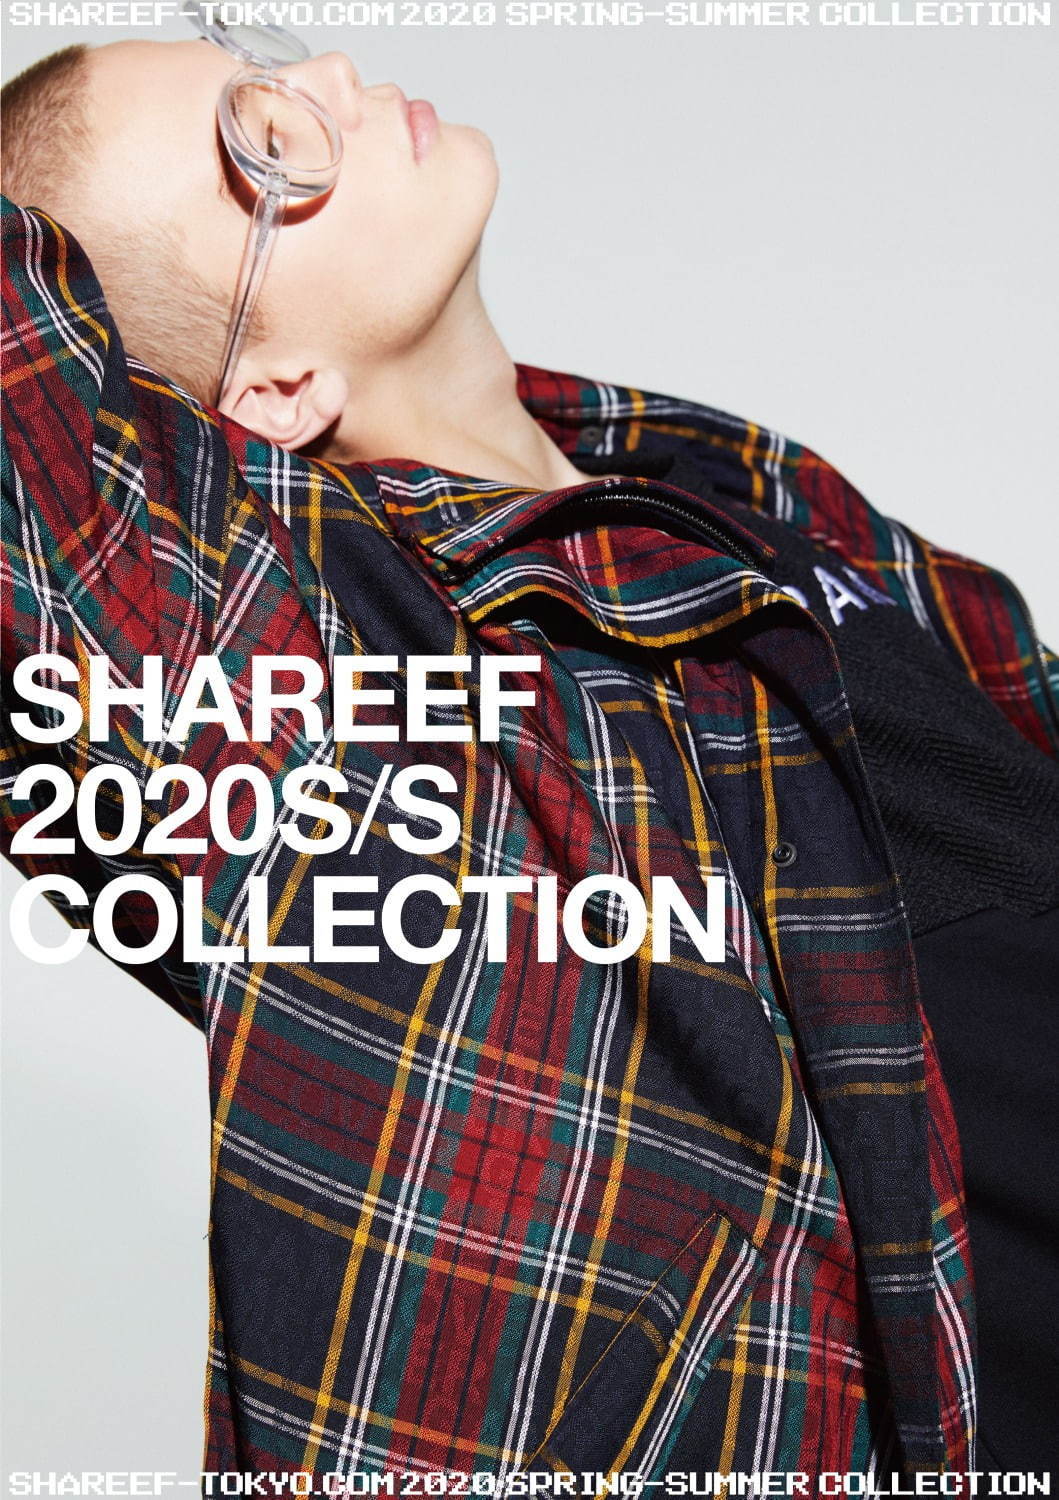 シャリーフ(SHAREEF) 2020年春夏メンズコレクション ディテール - 写真2